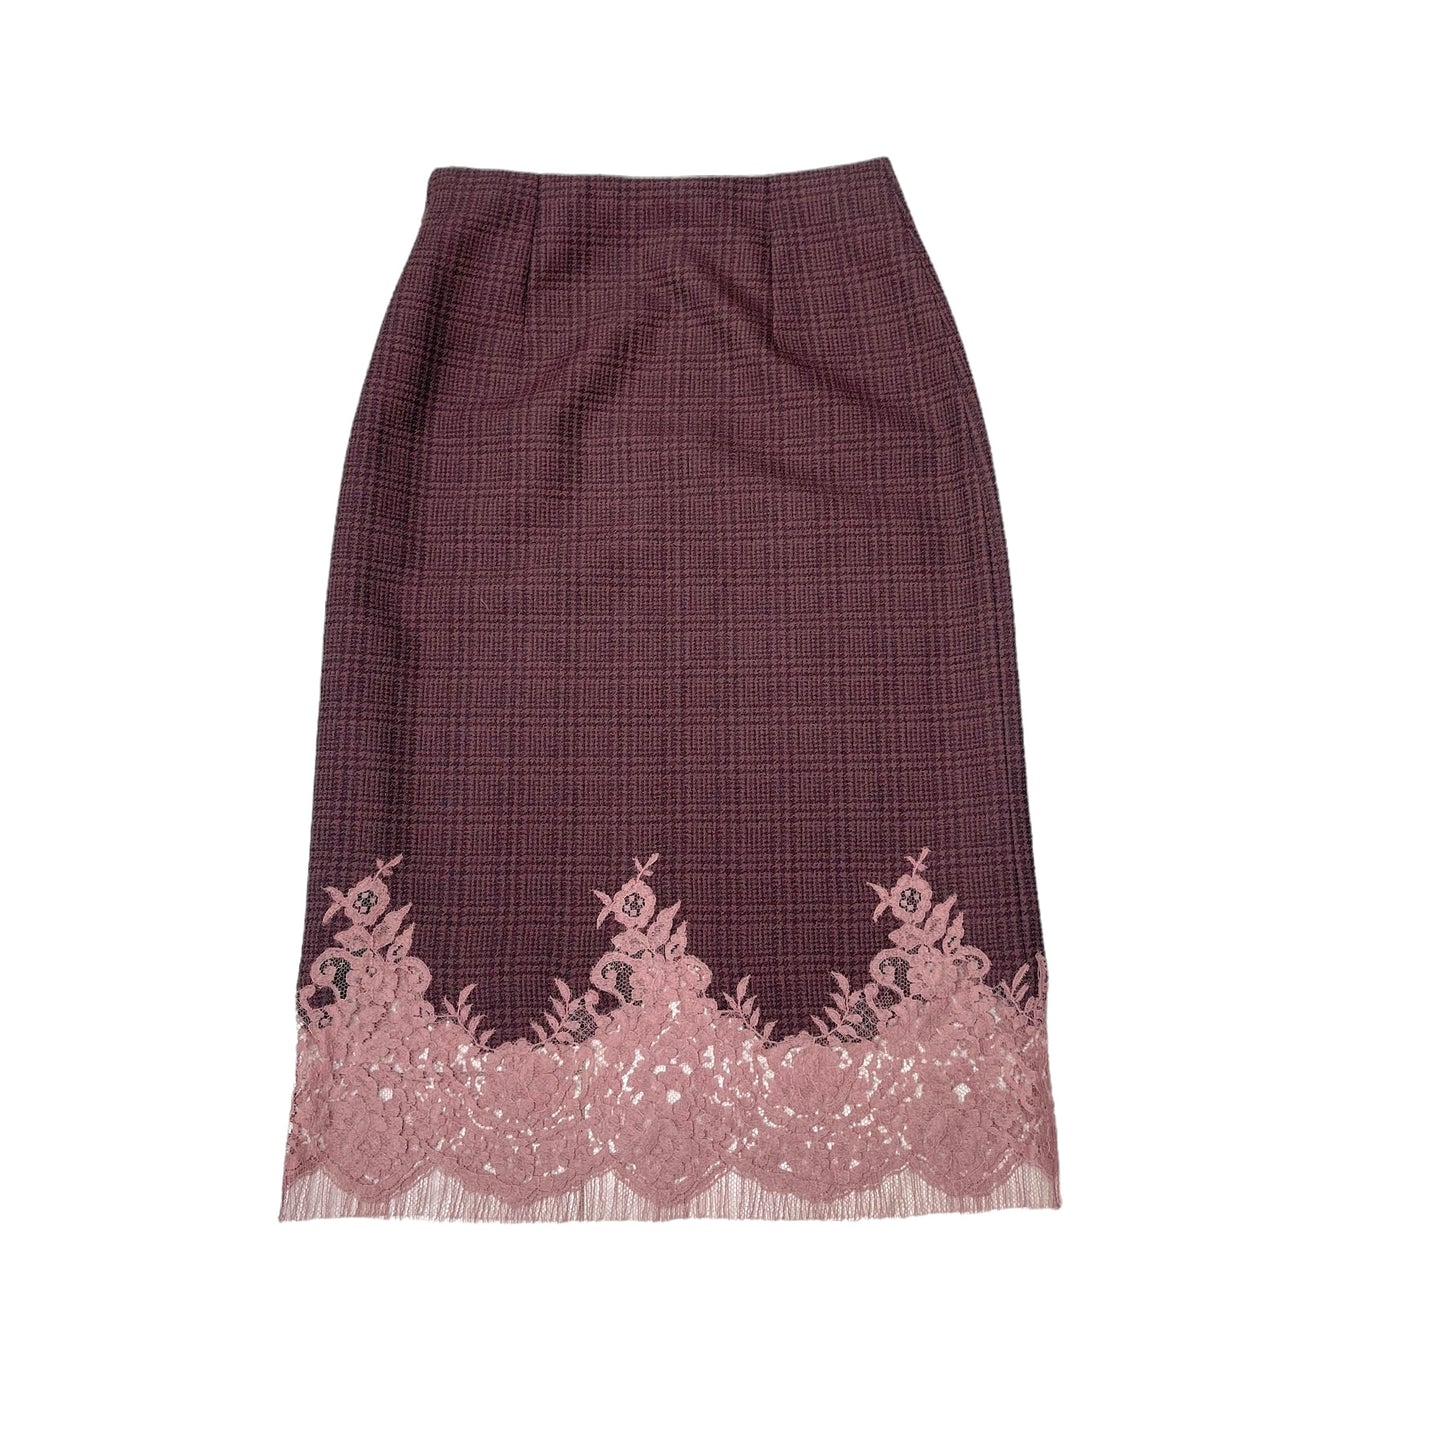 Burgundy Checker Skirt - S